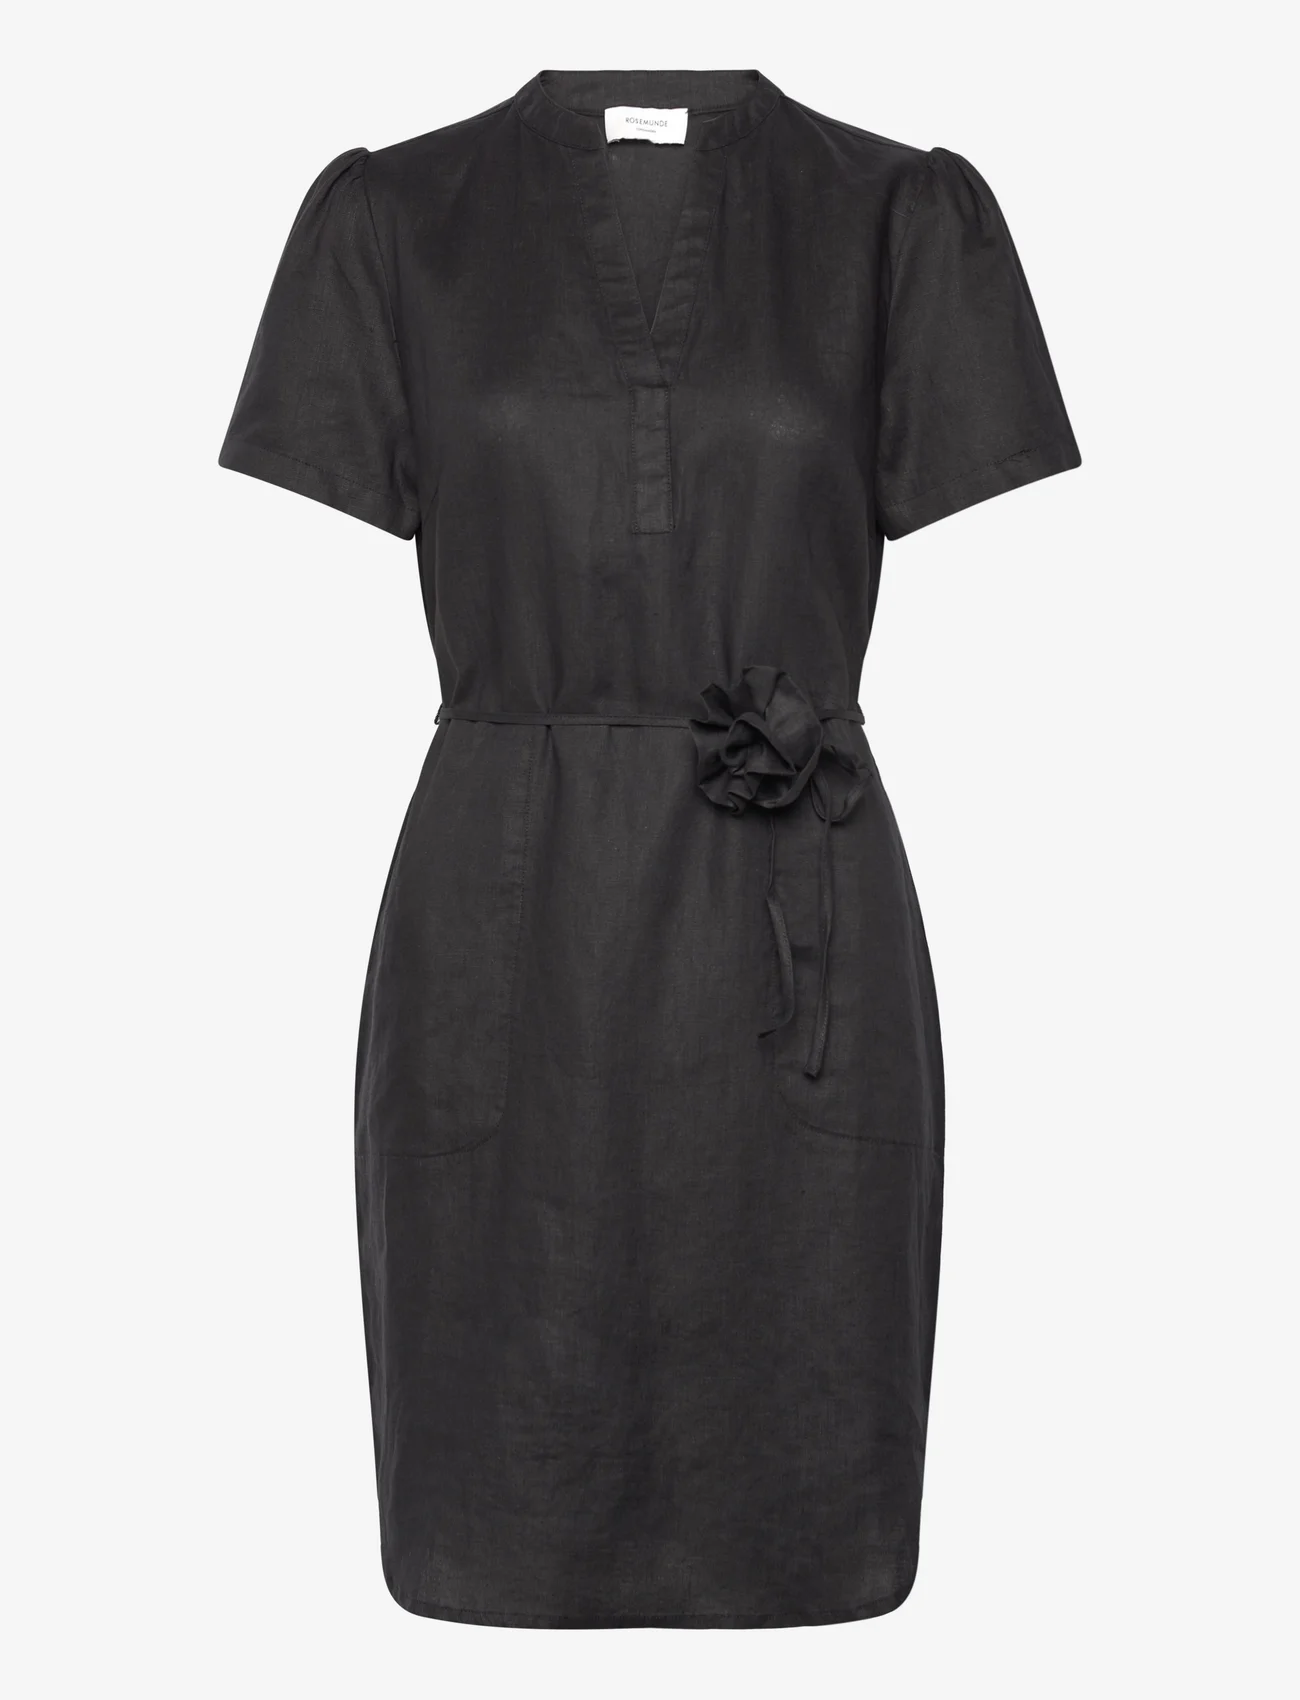 Rosemunde - Linen dress - kesämekot - black - 0